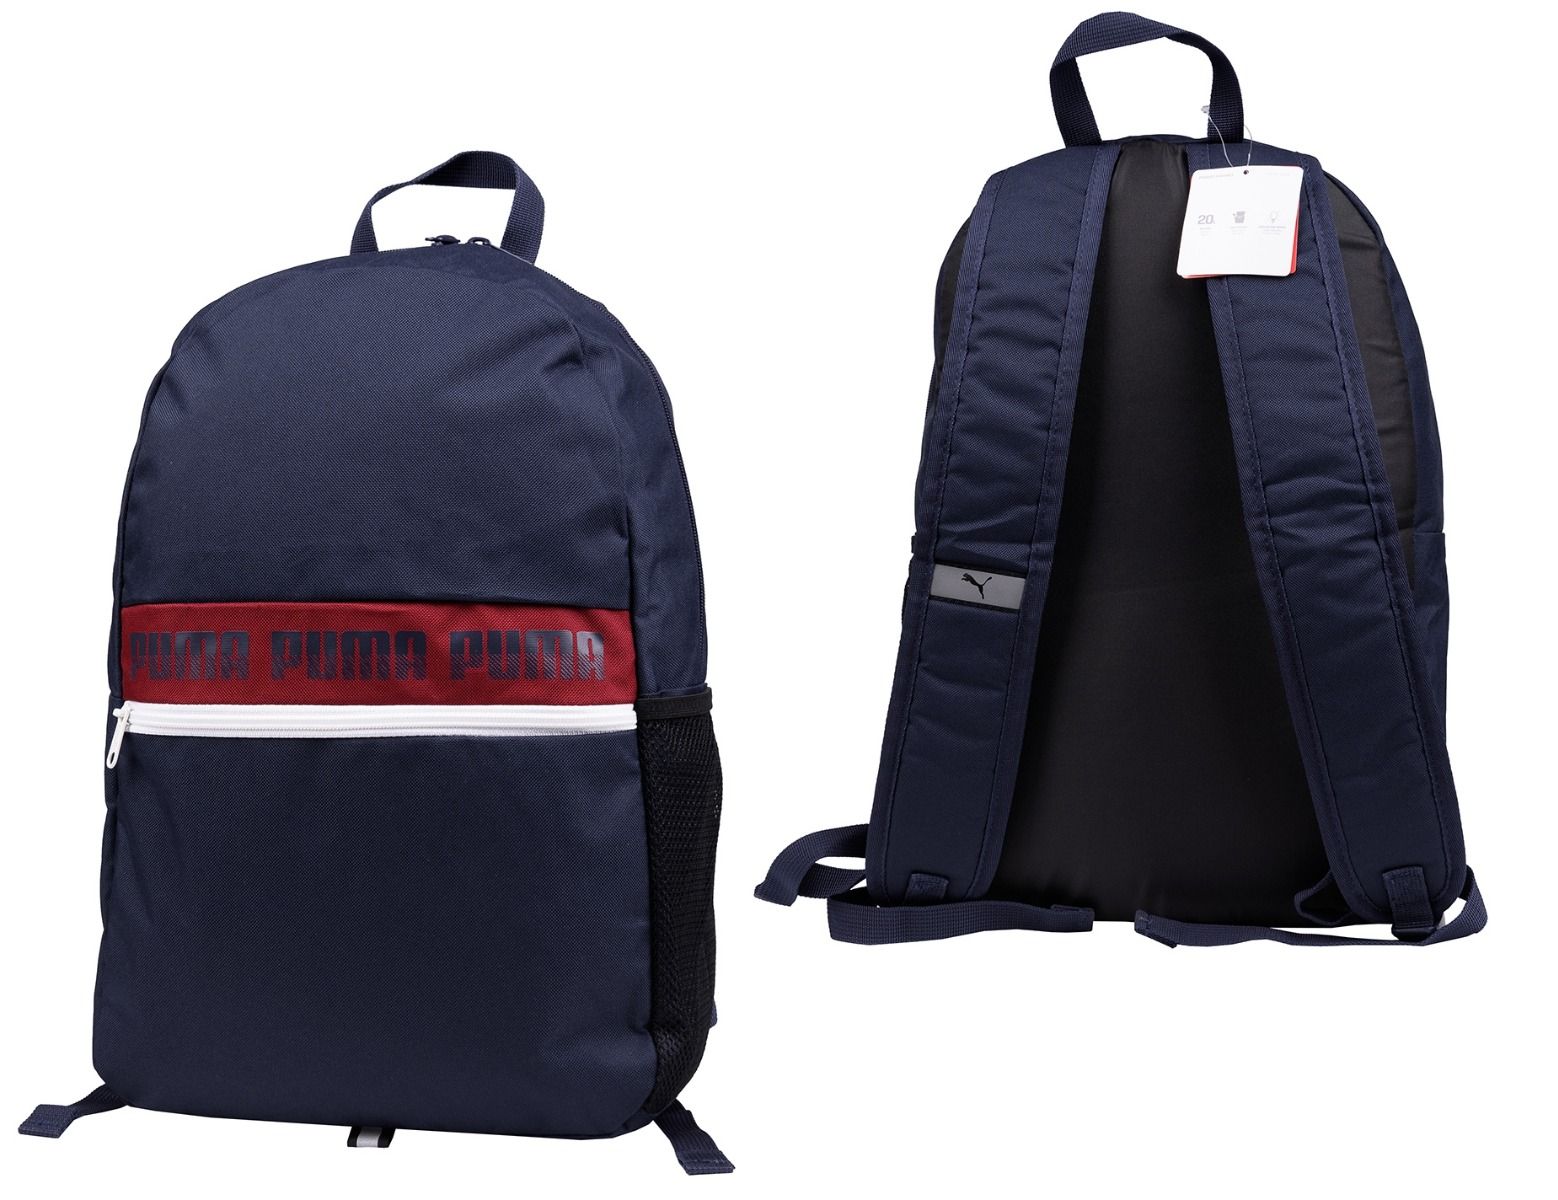 Puma Batoh Phase Backpack II 075592 02